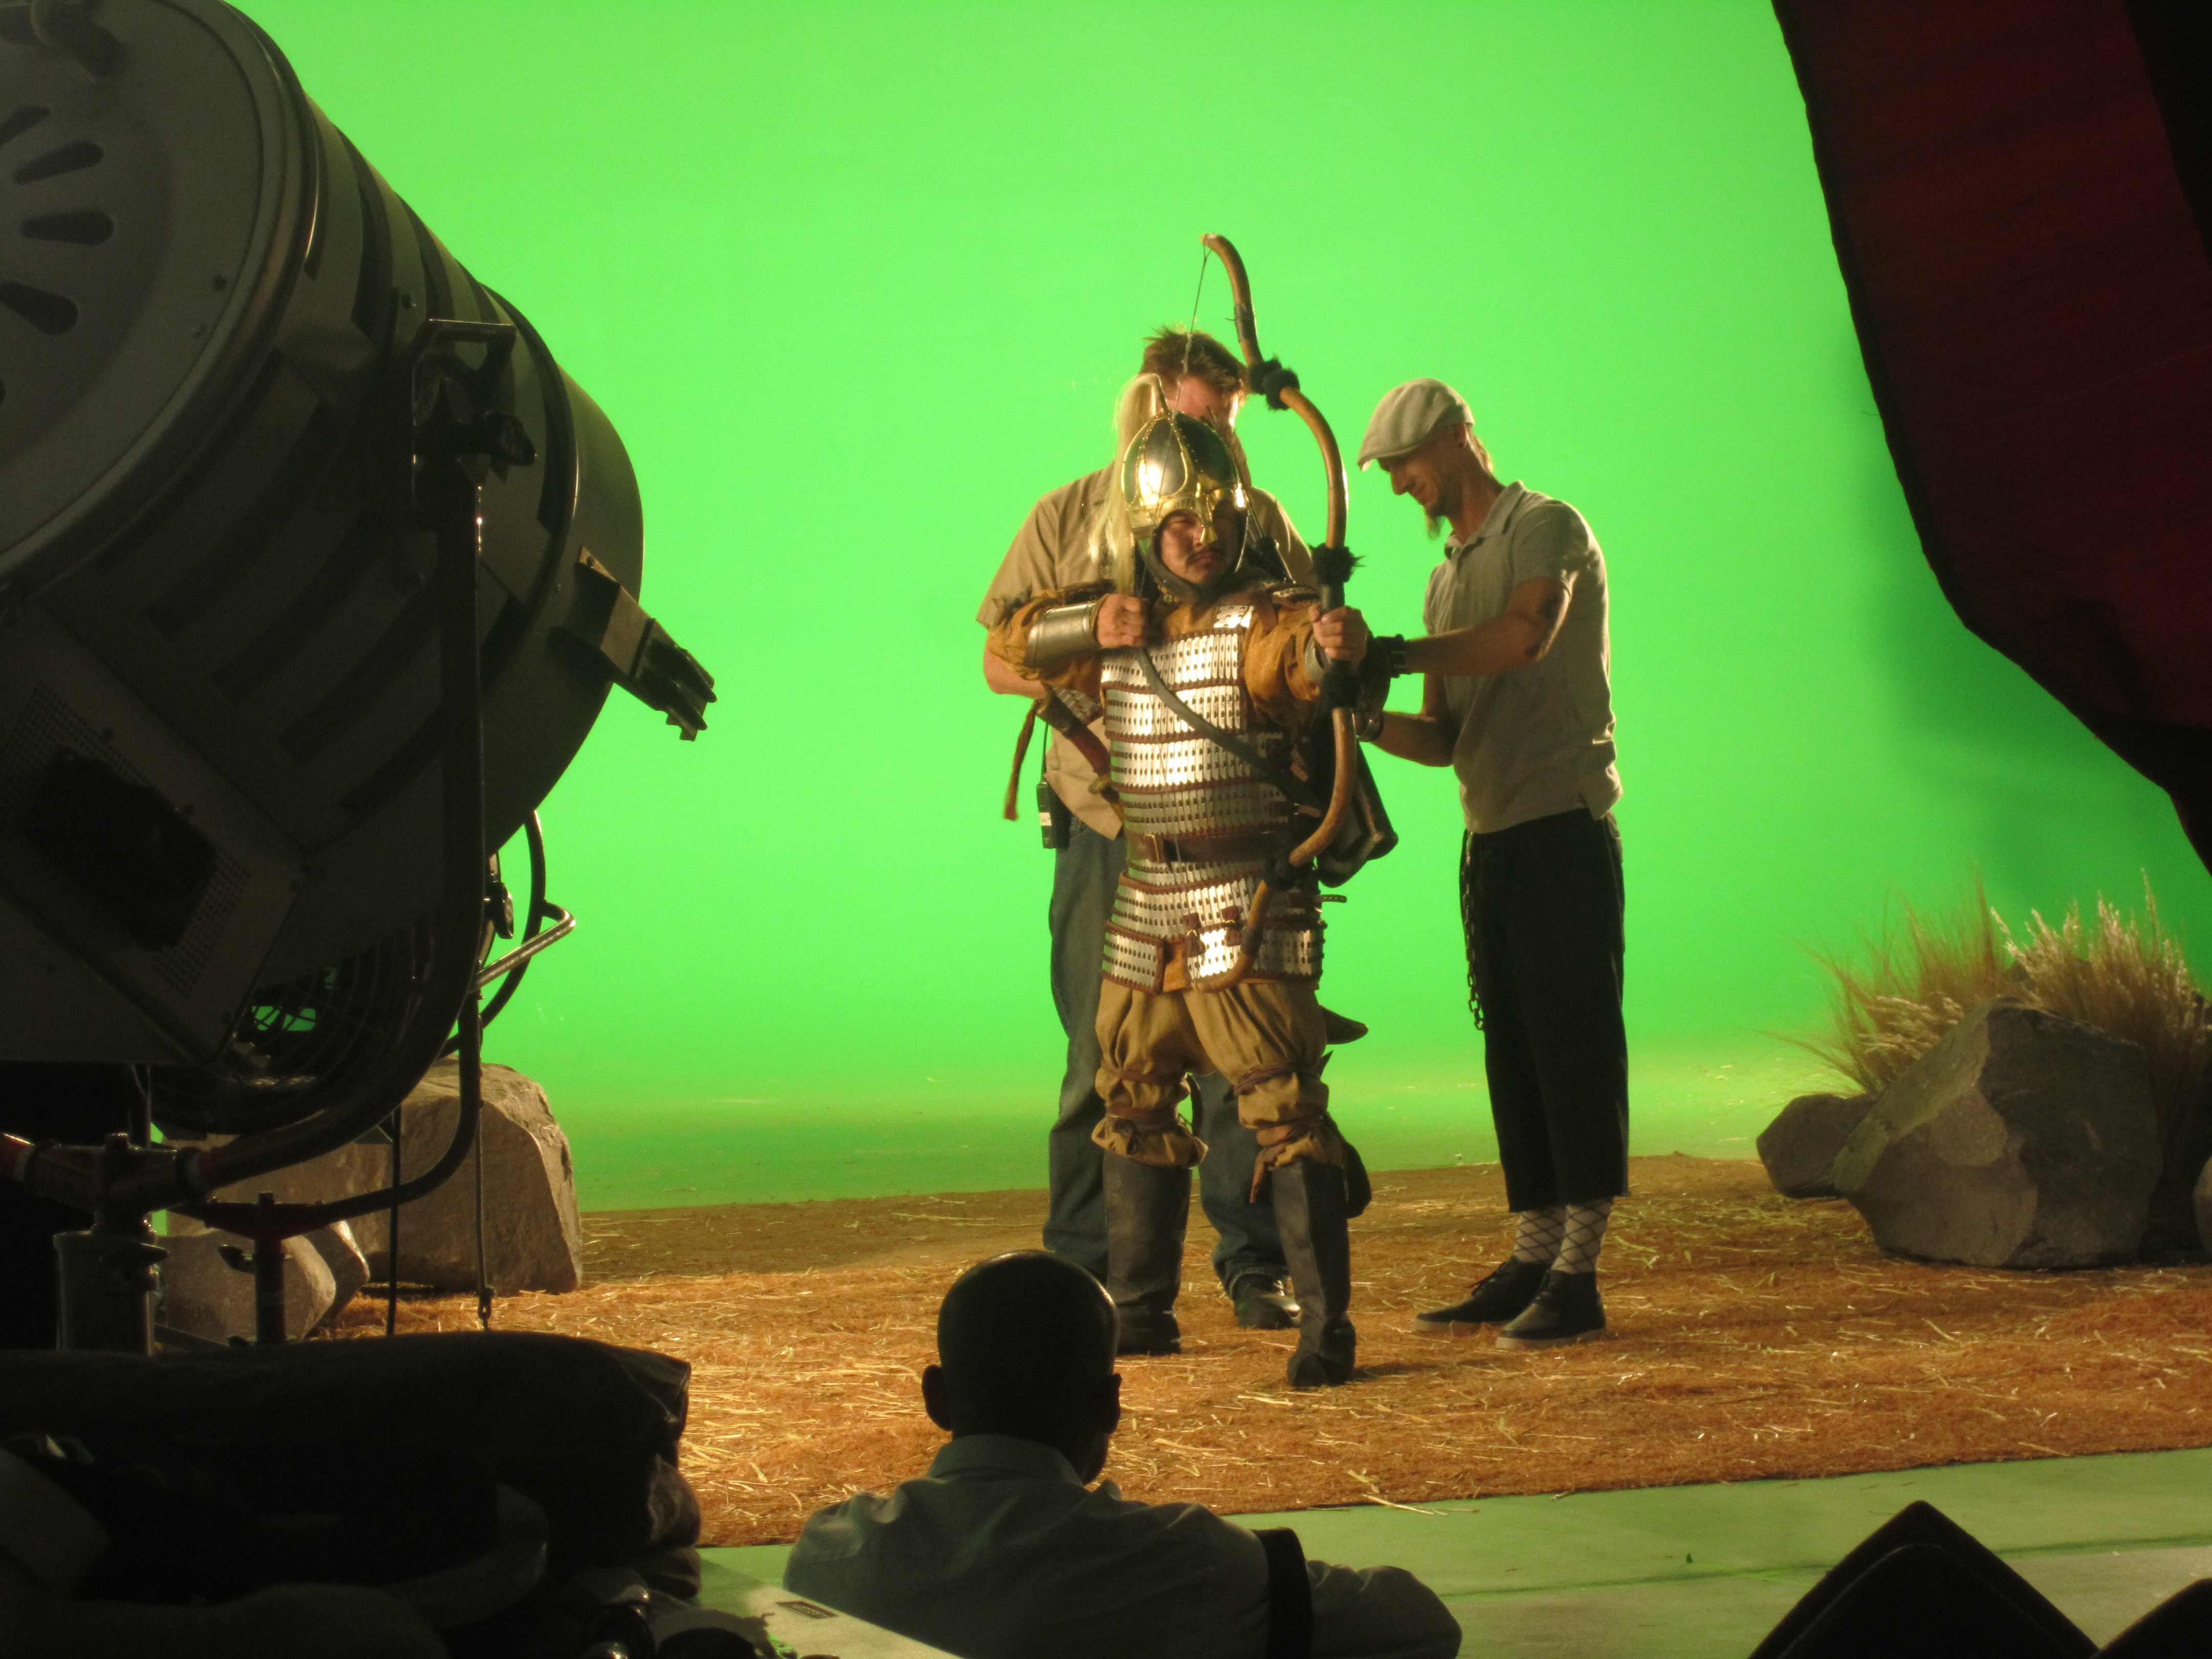 Marcus as Genghis Khan in Deadliest Warrior on SPIKE TV.